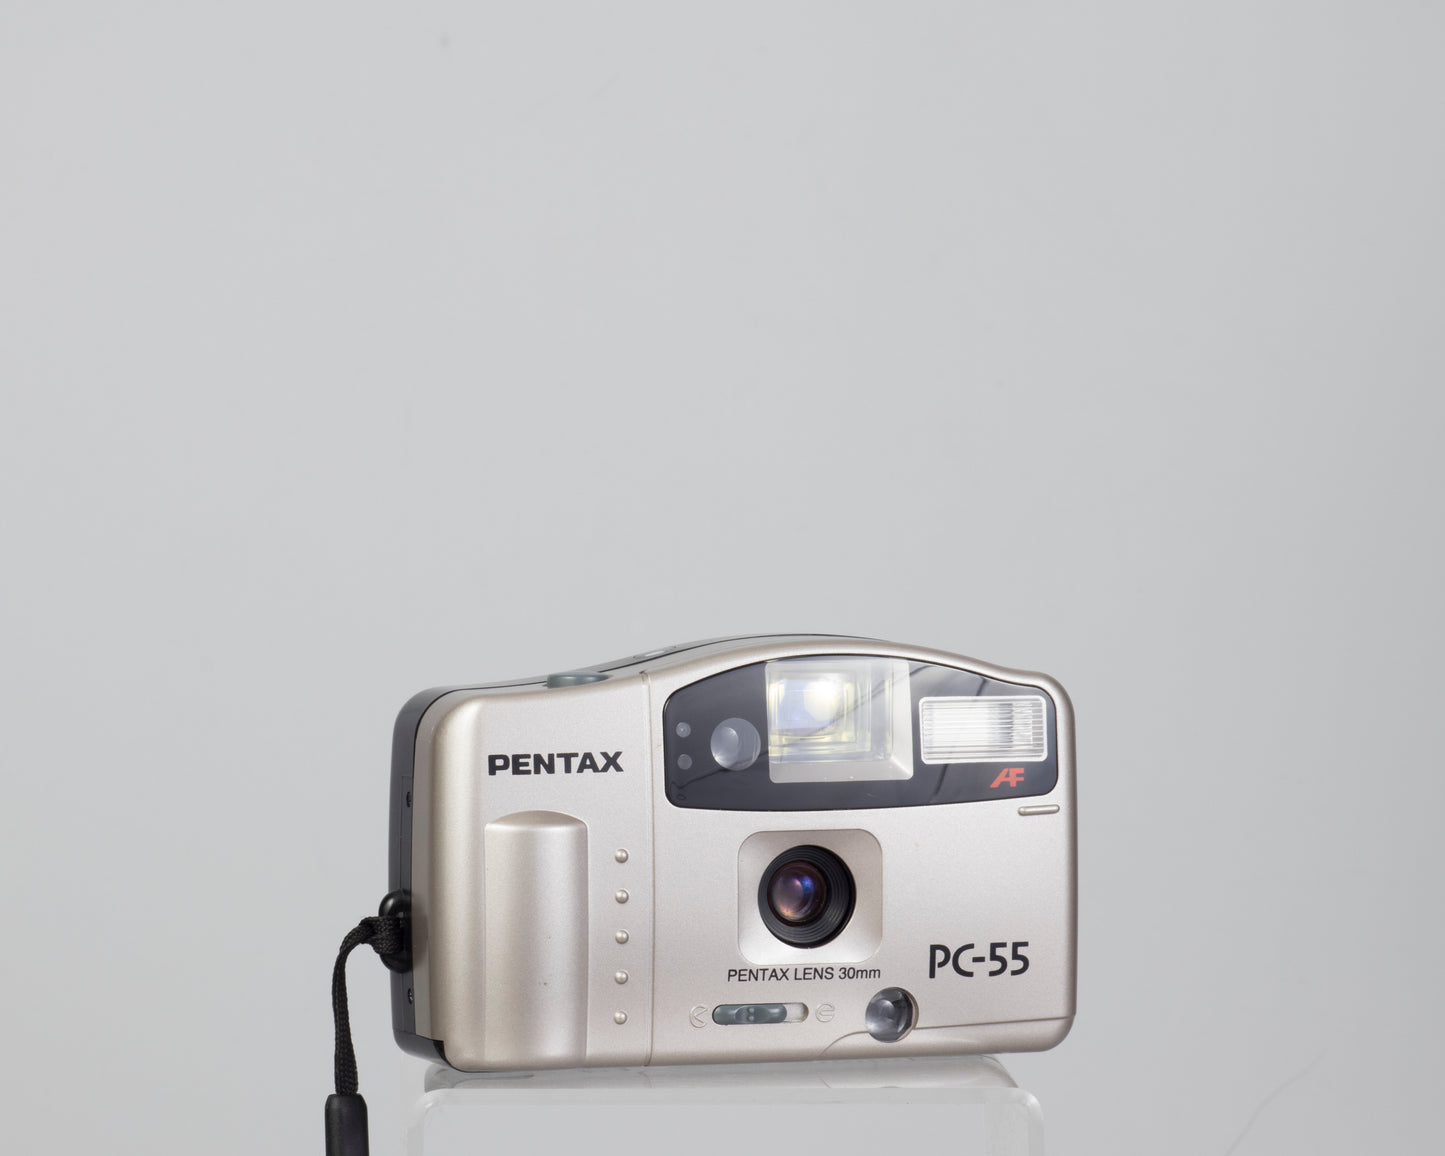 Appareil photo Pentax PC-55 35 mm * le flash ne fonctionne pas * (série 9498234)